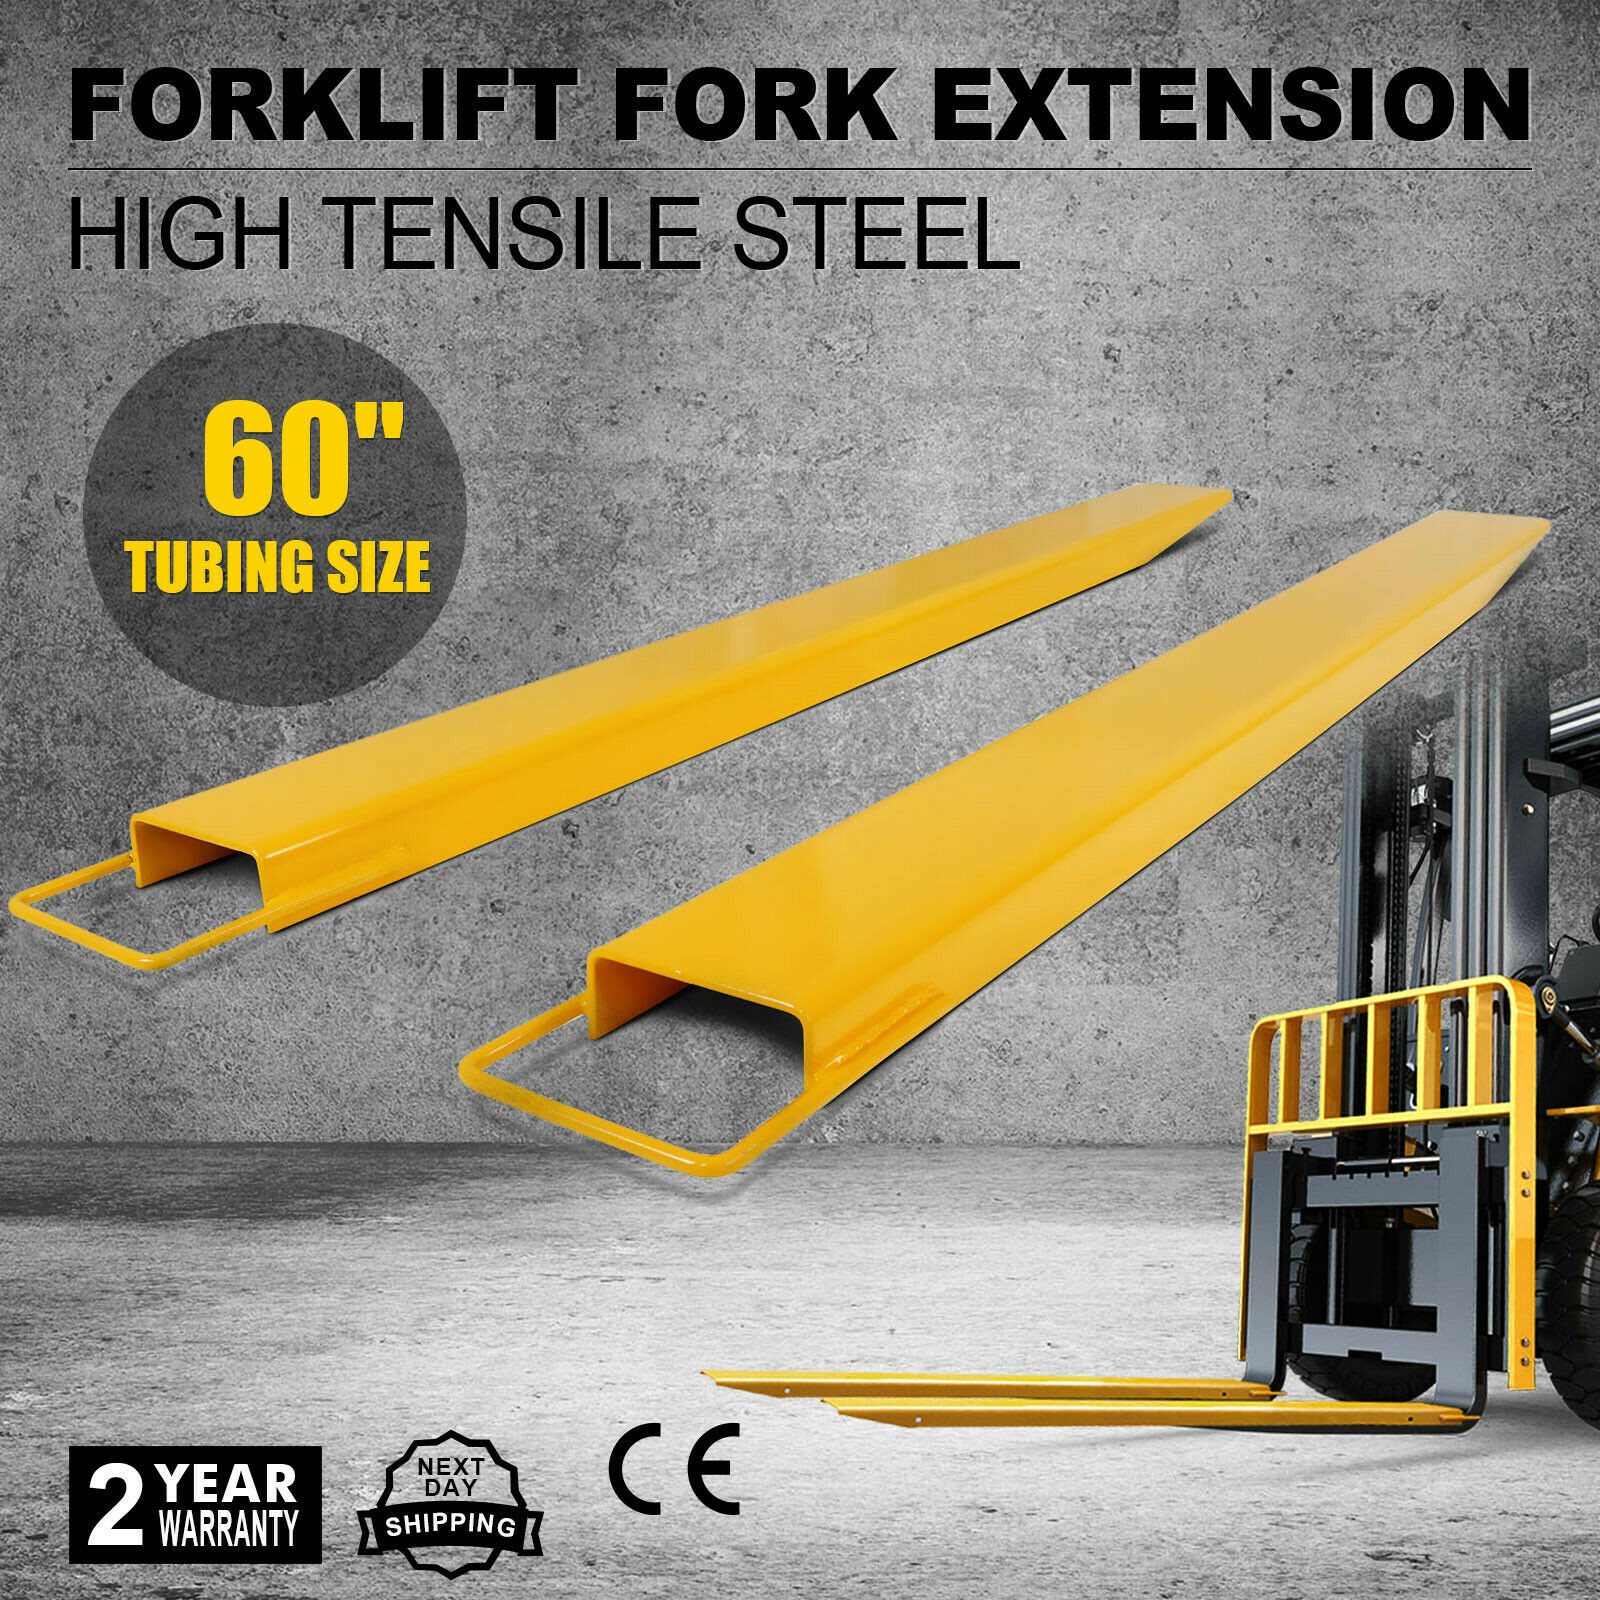 Forklift Fork Extensions Slippers Brand New 1520mm Ebay